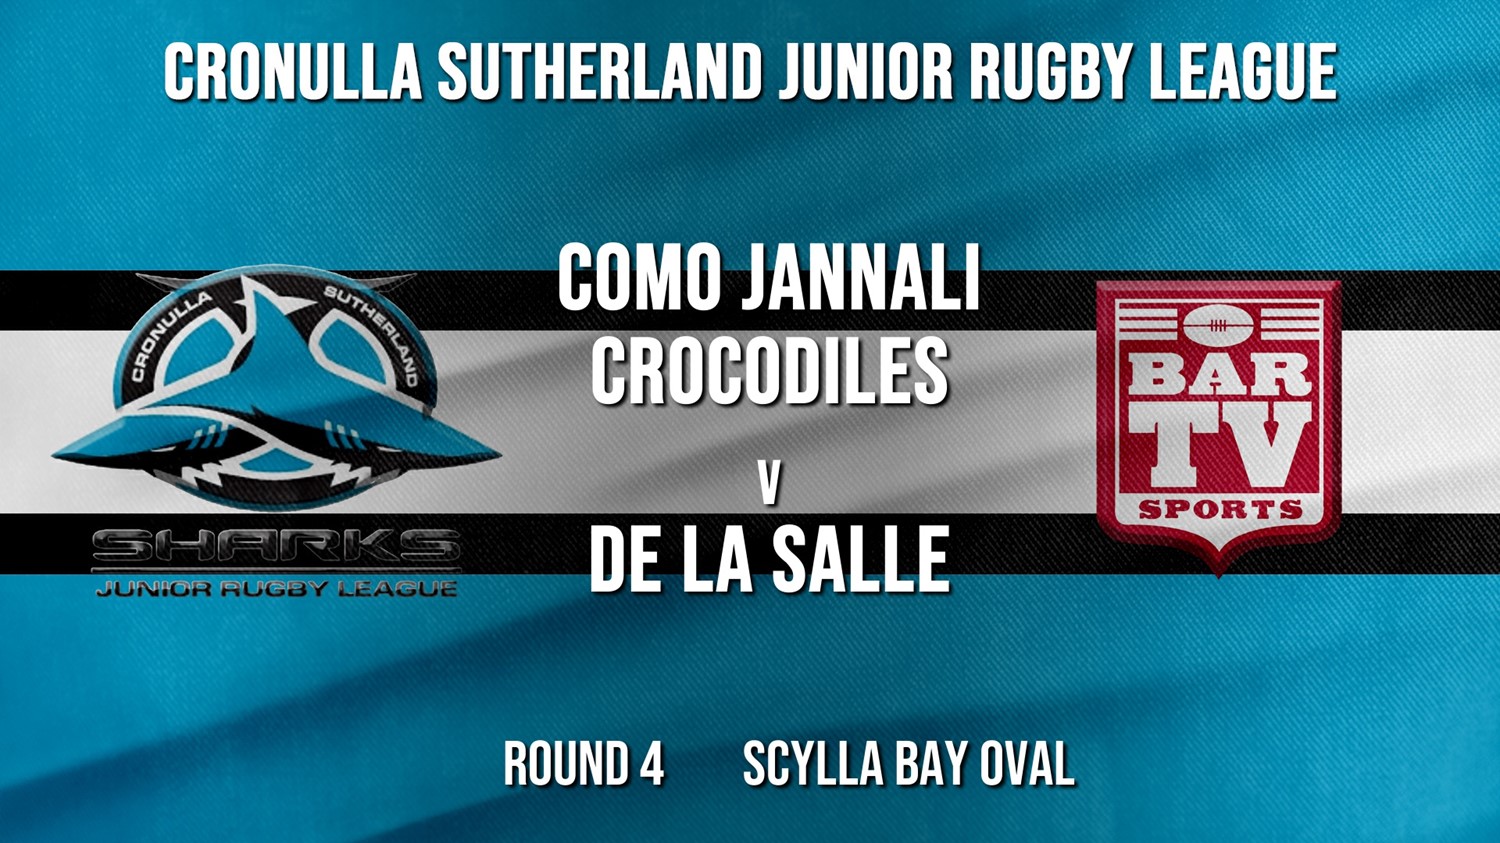 Cronulla JRL Round 4 - Emerging Cup - Como Jannali Crocodiles v De La Salle Minigame Slate Image